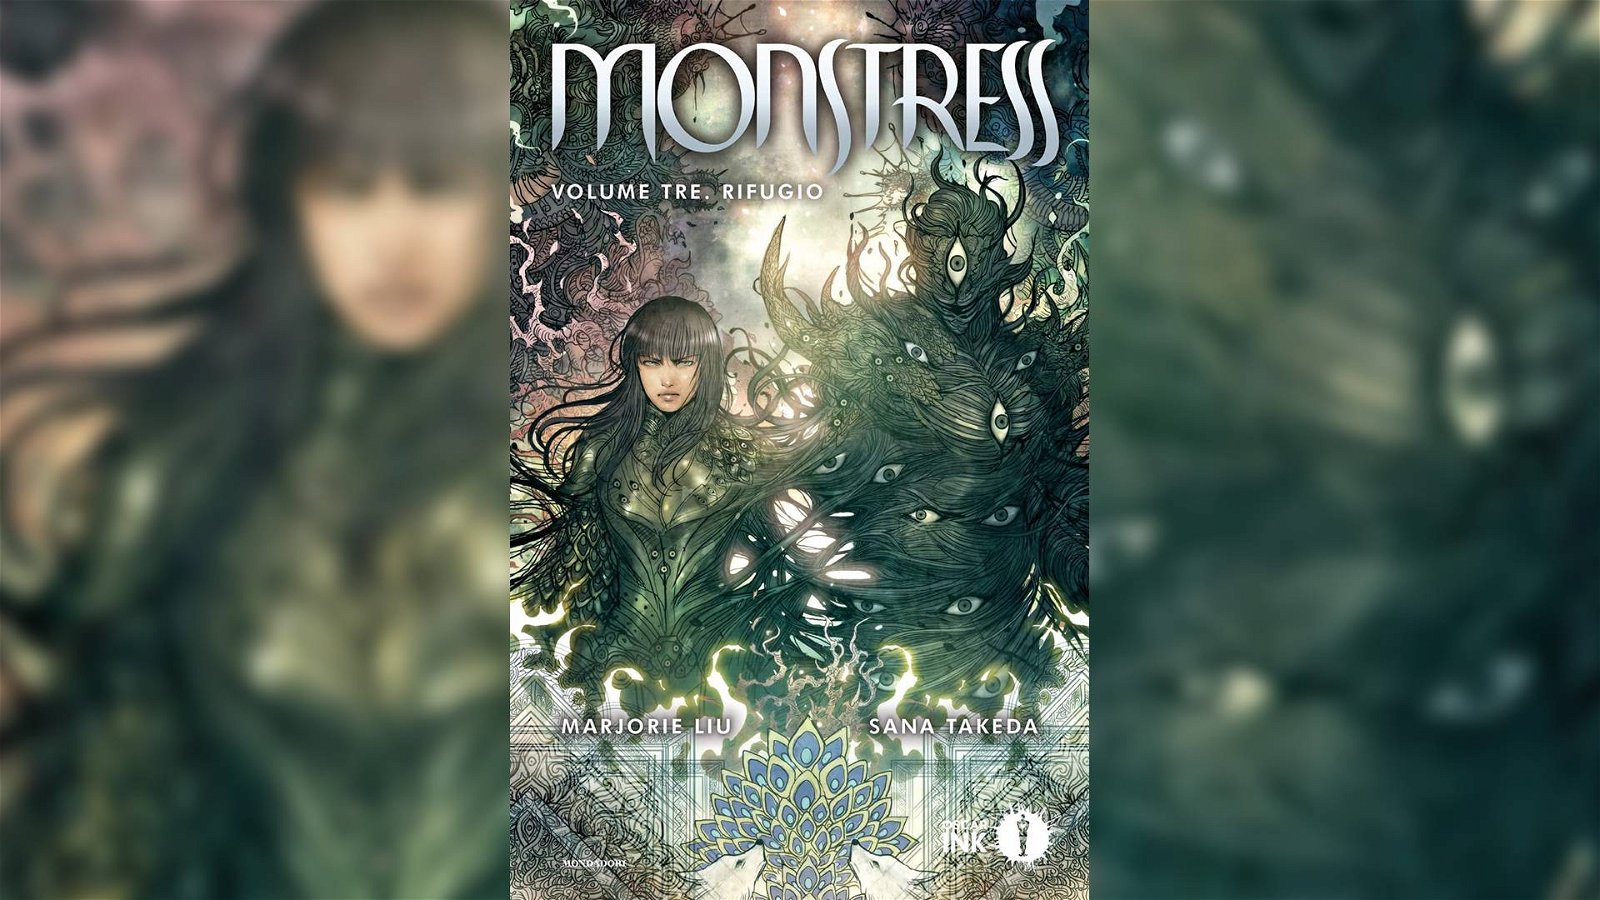 Immagine di Monstress Vol. 3 - Rifugio: la recensione del terzo volume di Liu e Takeda